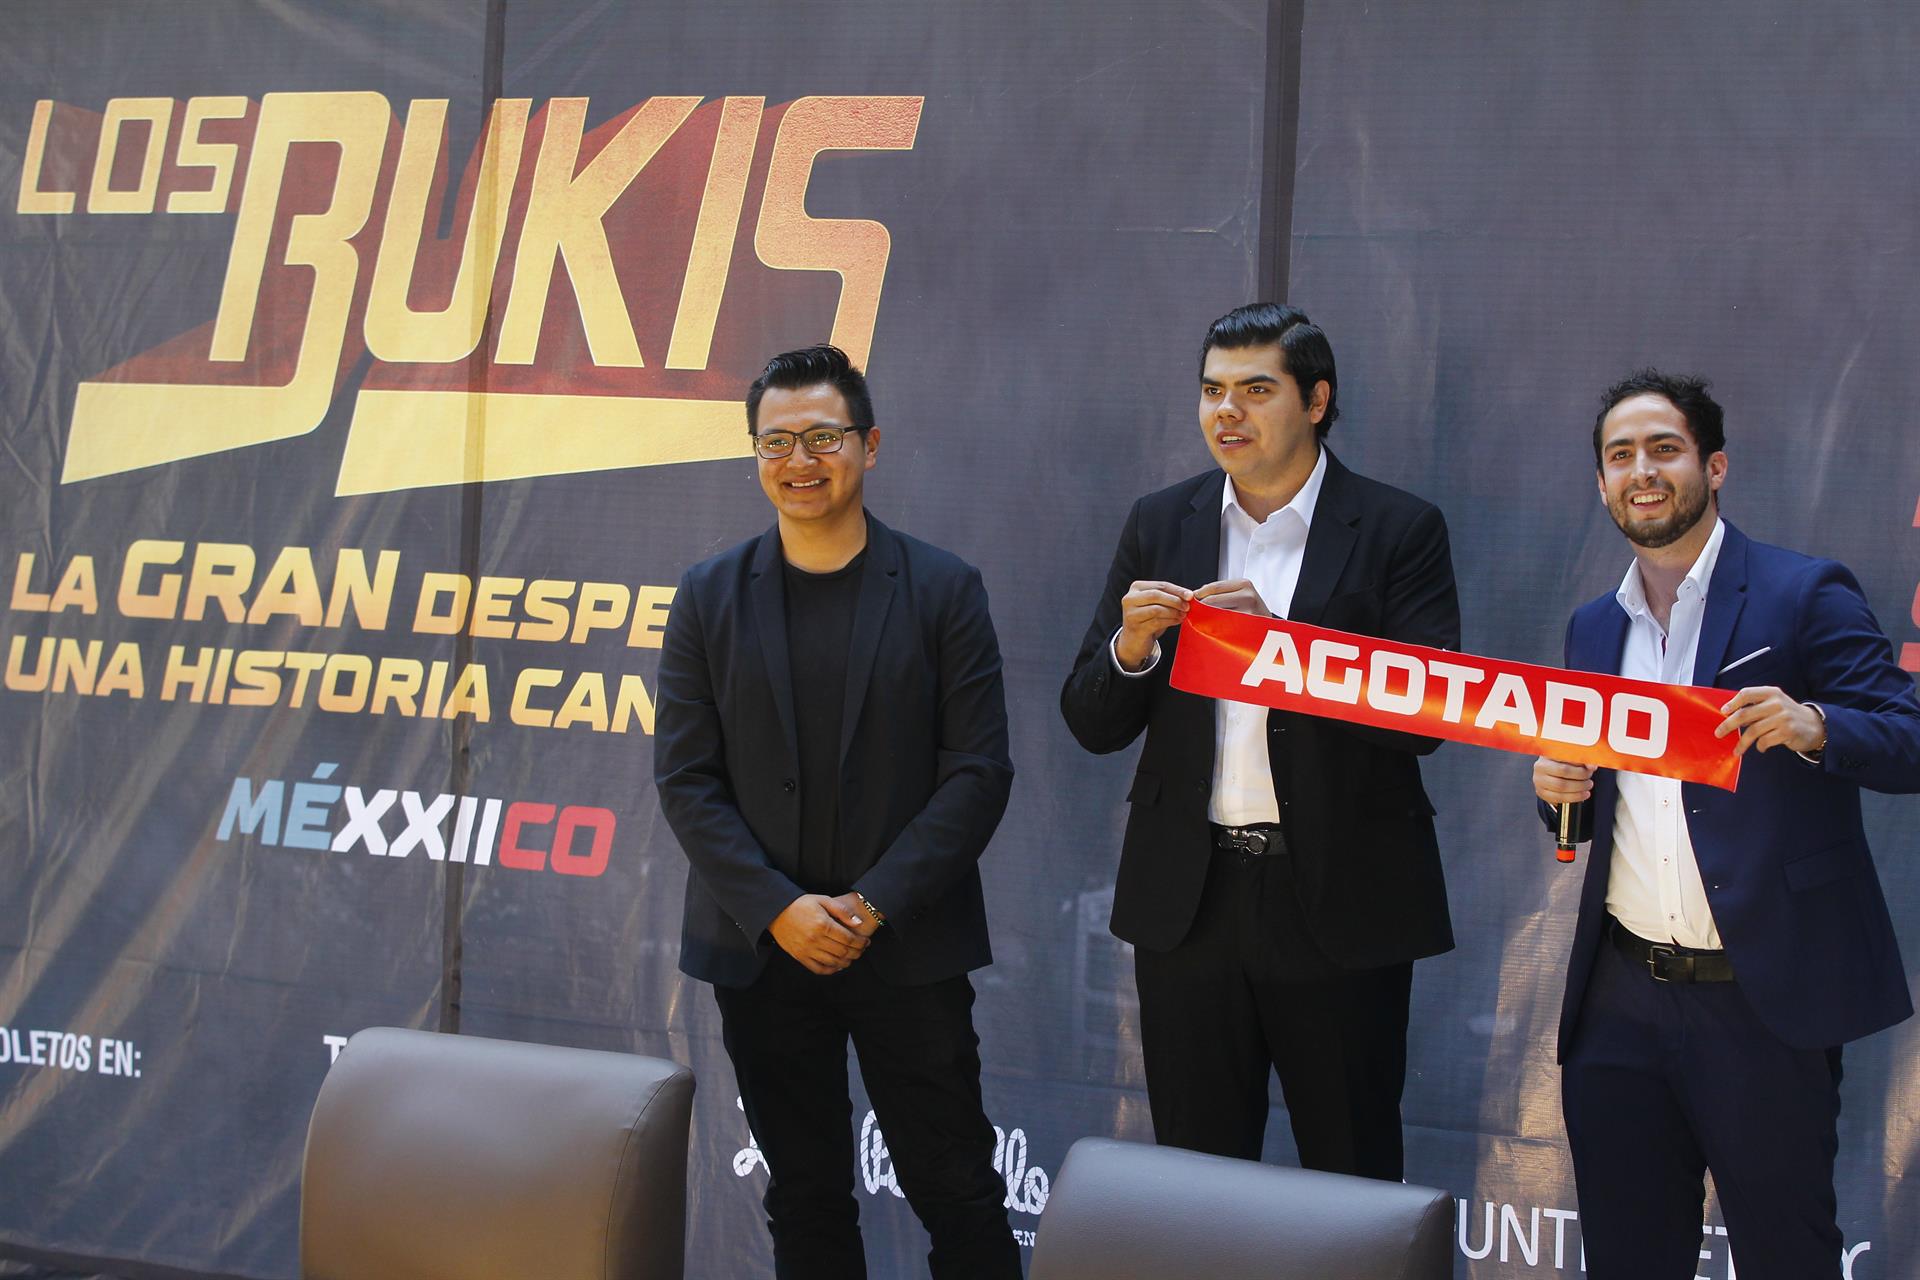 Los promotores Raúl Macías (i), Pedro Ramírez (c) y Francisco Camarena (d) participan hoy, durante una rueda de prensa para anunciar los conciertos del grupo musical Los Bukis, en la ciudad de Guadalajara, Jalisco (México). EFE/ Francisco Guasco
